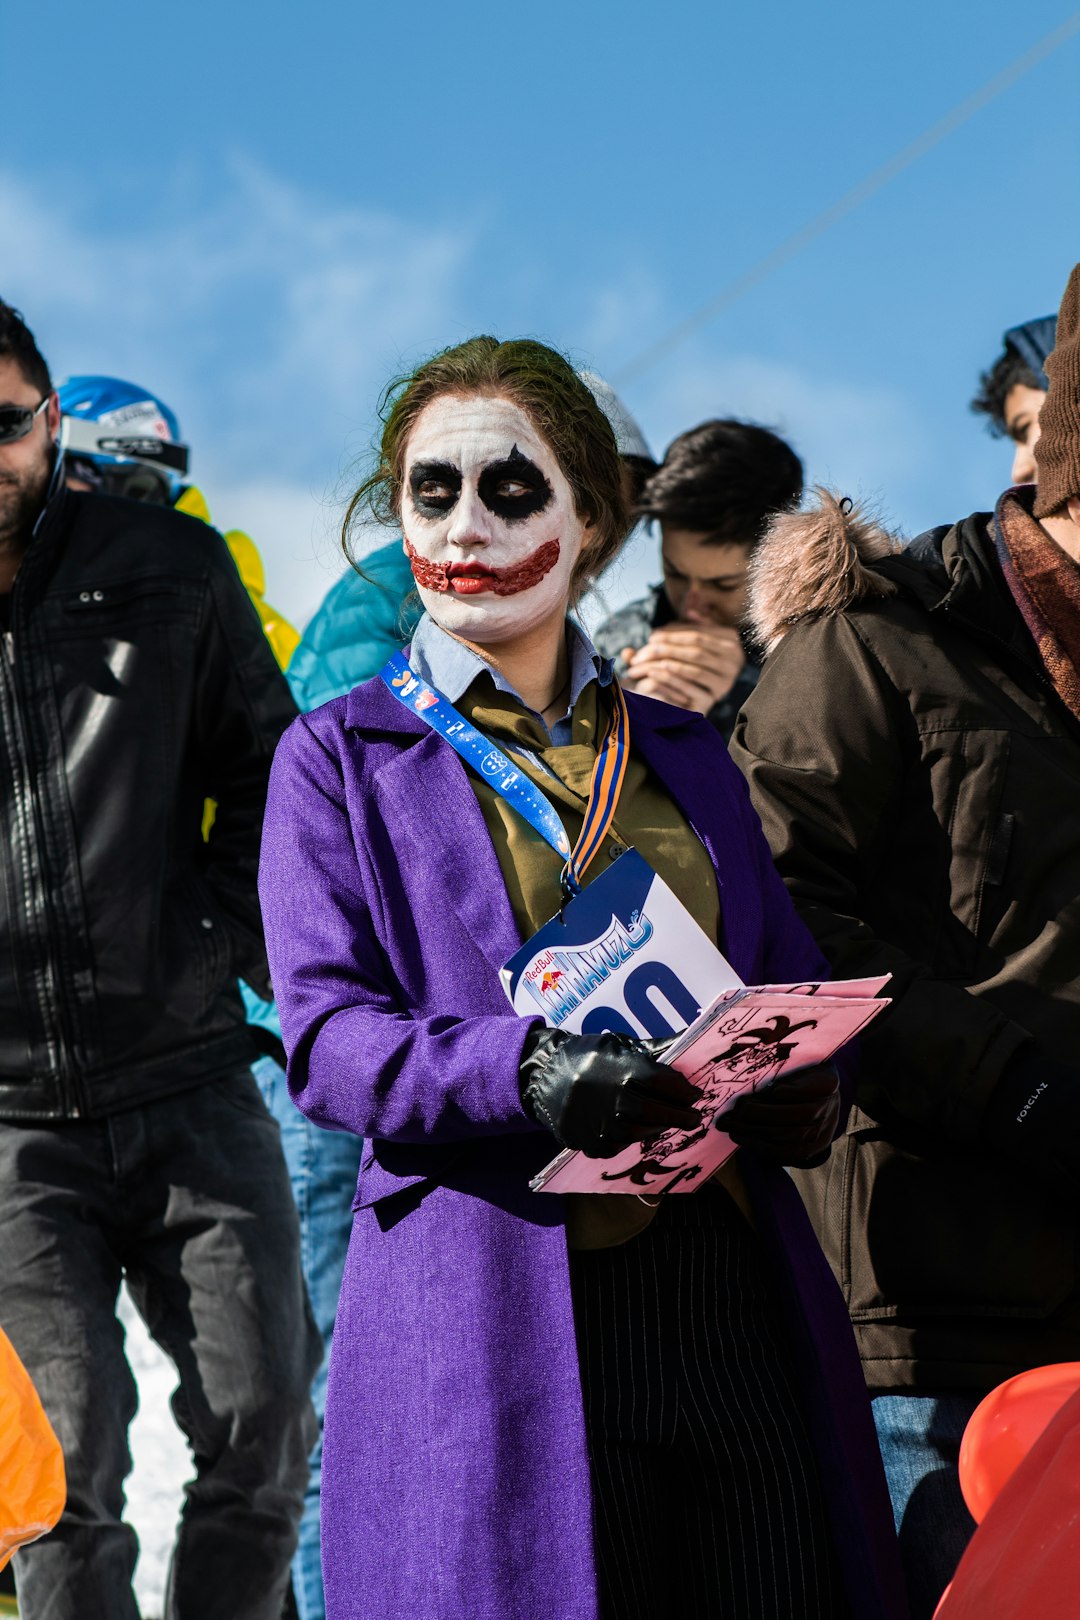 woman in a Joker costume